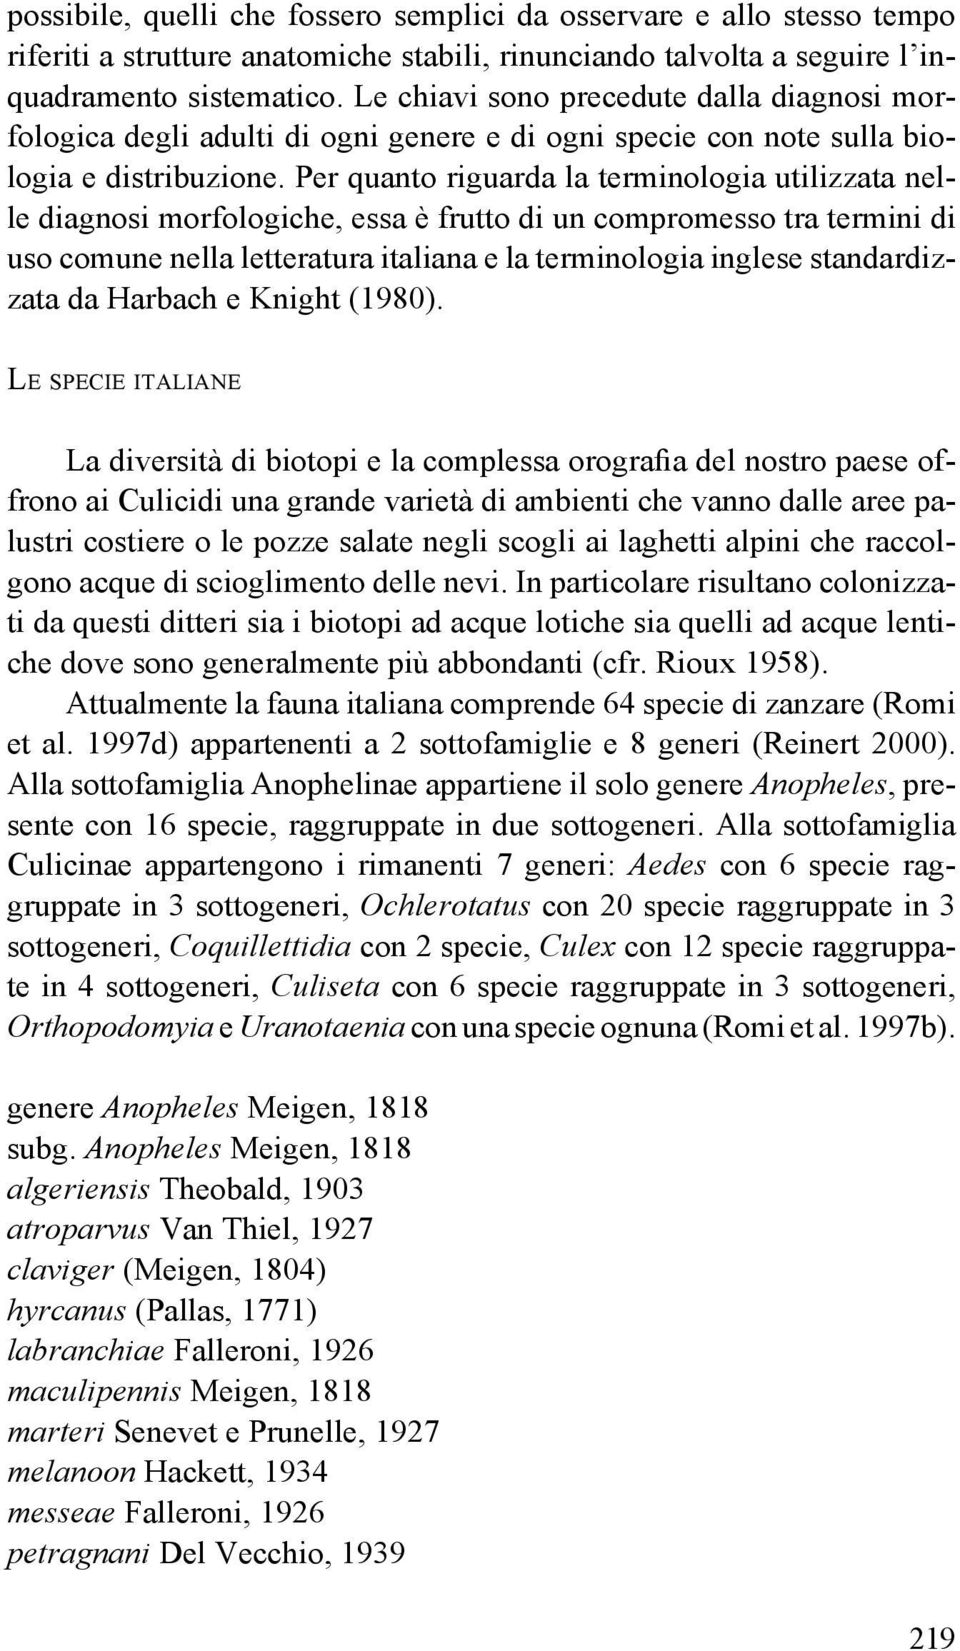 Per quanto riguarda la terminologia utilizzata nelle diagnosi morfologiche, essa è frutto di un compromesso tra termini di uso comune nella letteratura italiana e la terminologia inglese